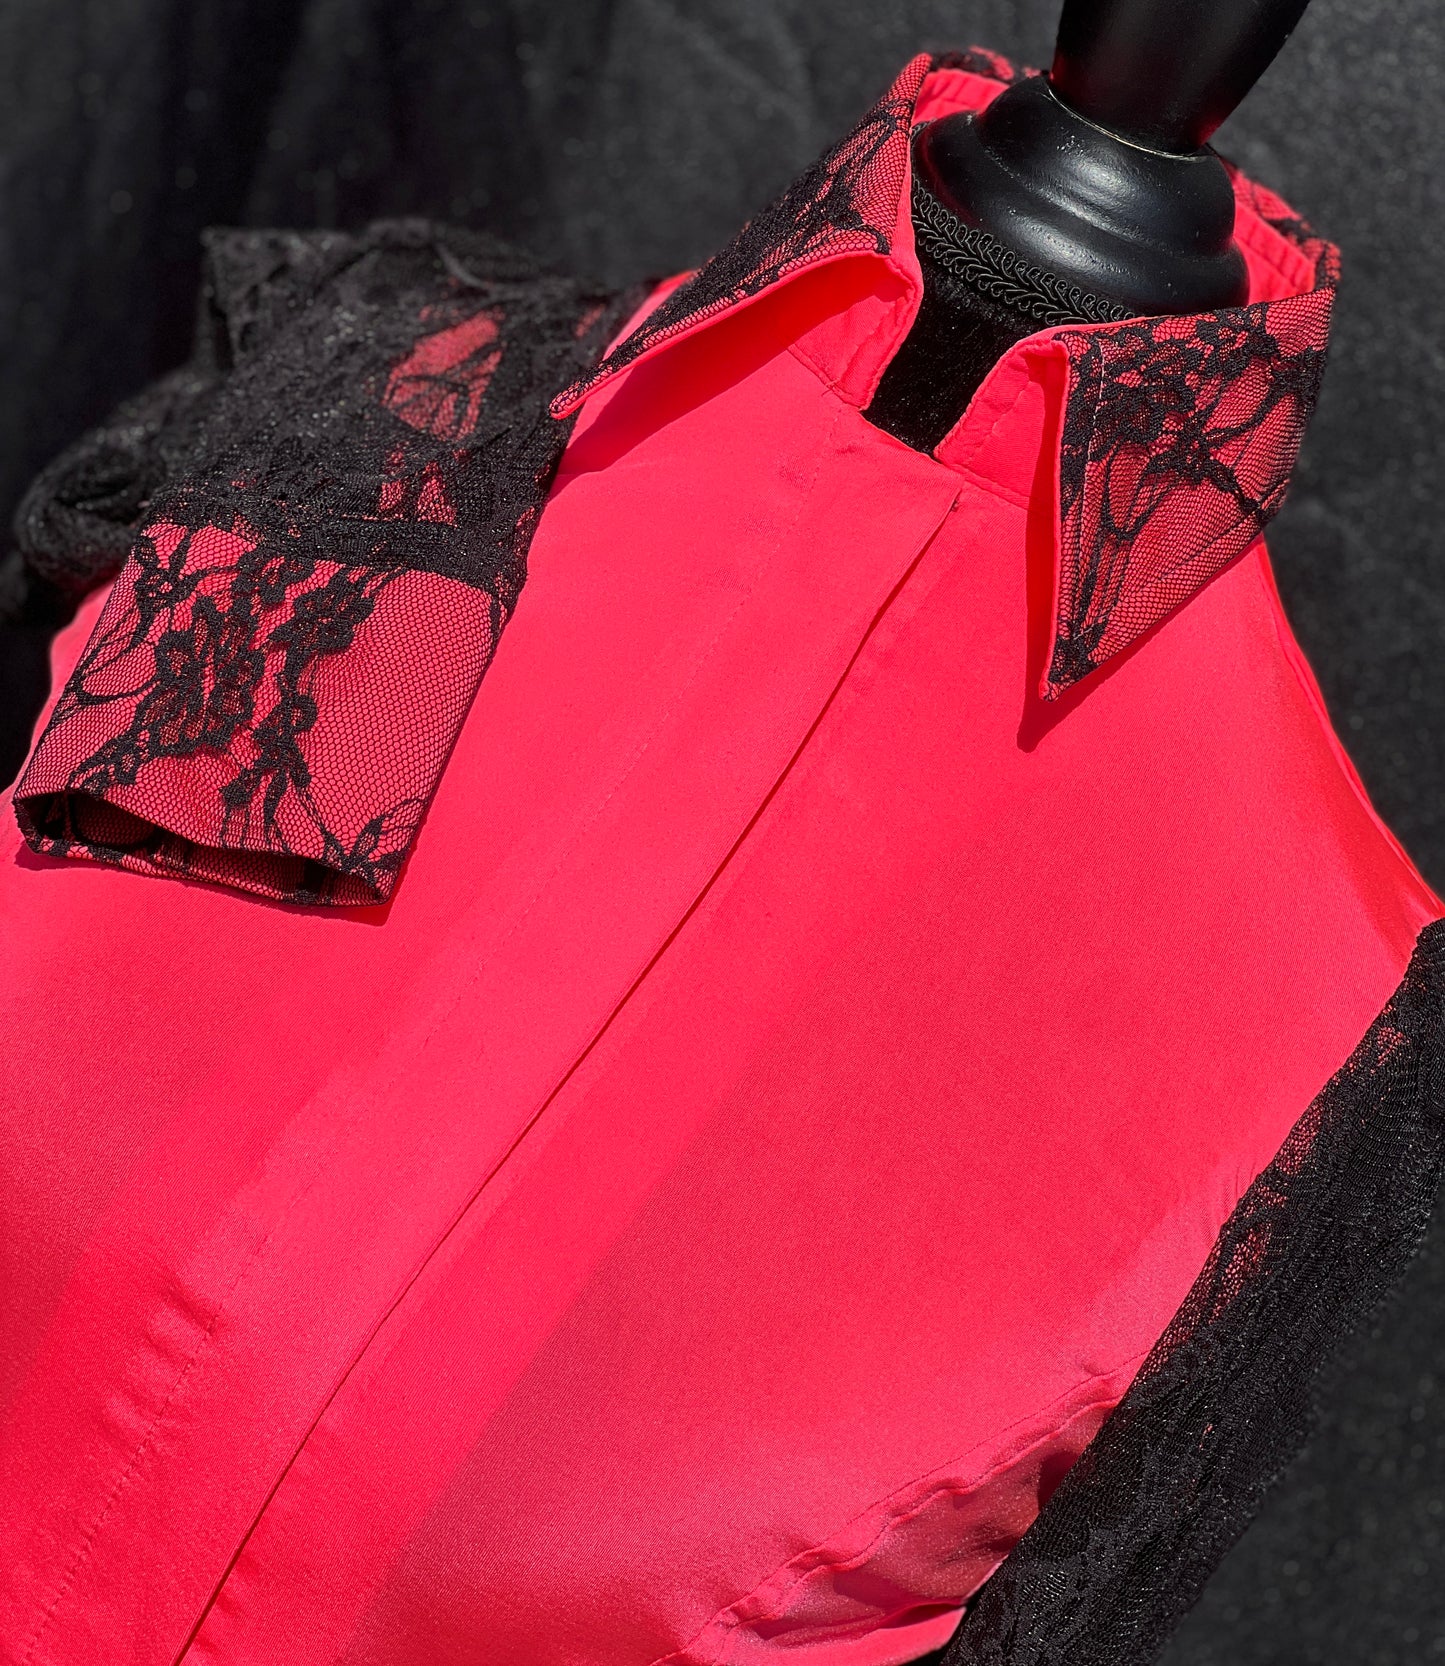 Neon Coral Lace Sleeve Hidden Zipper Light Weight Fitted Shirt